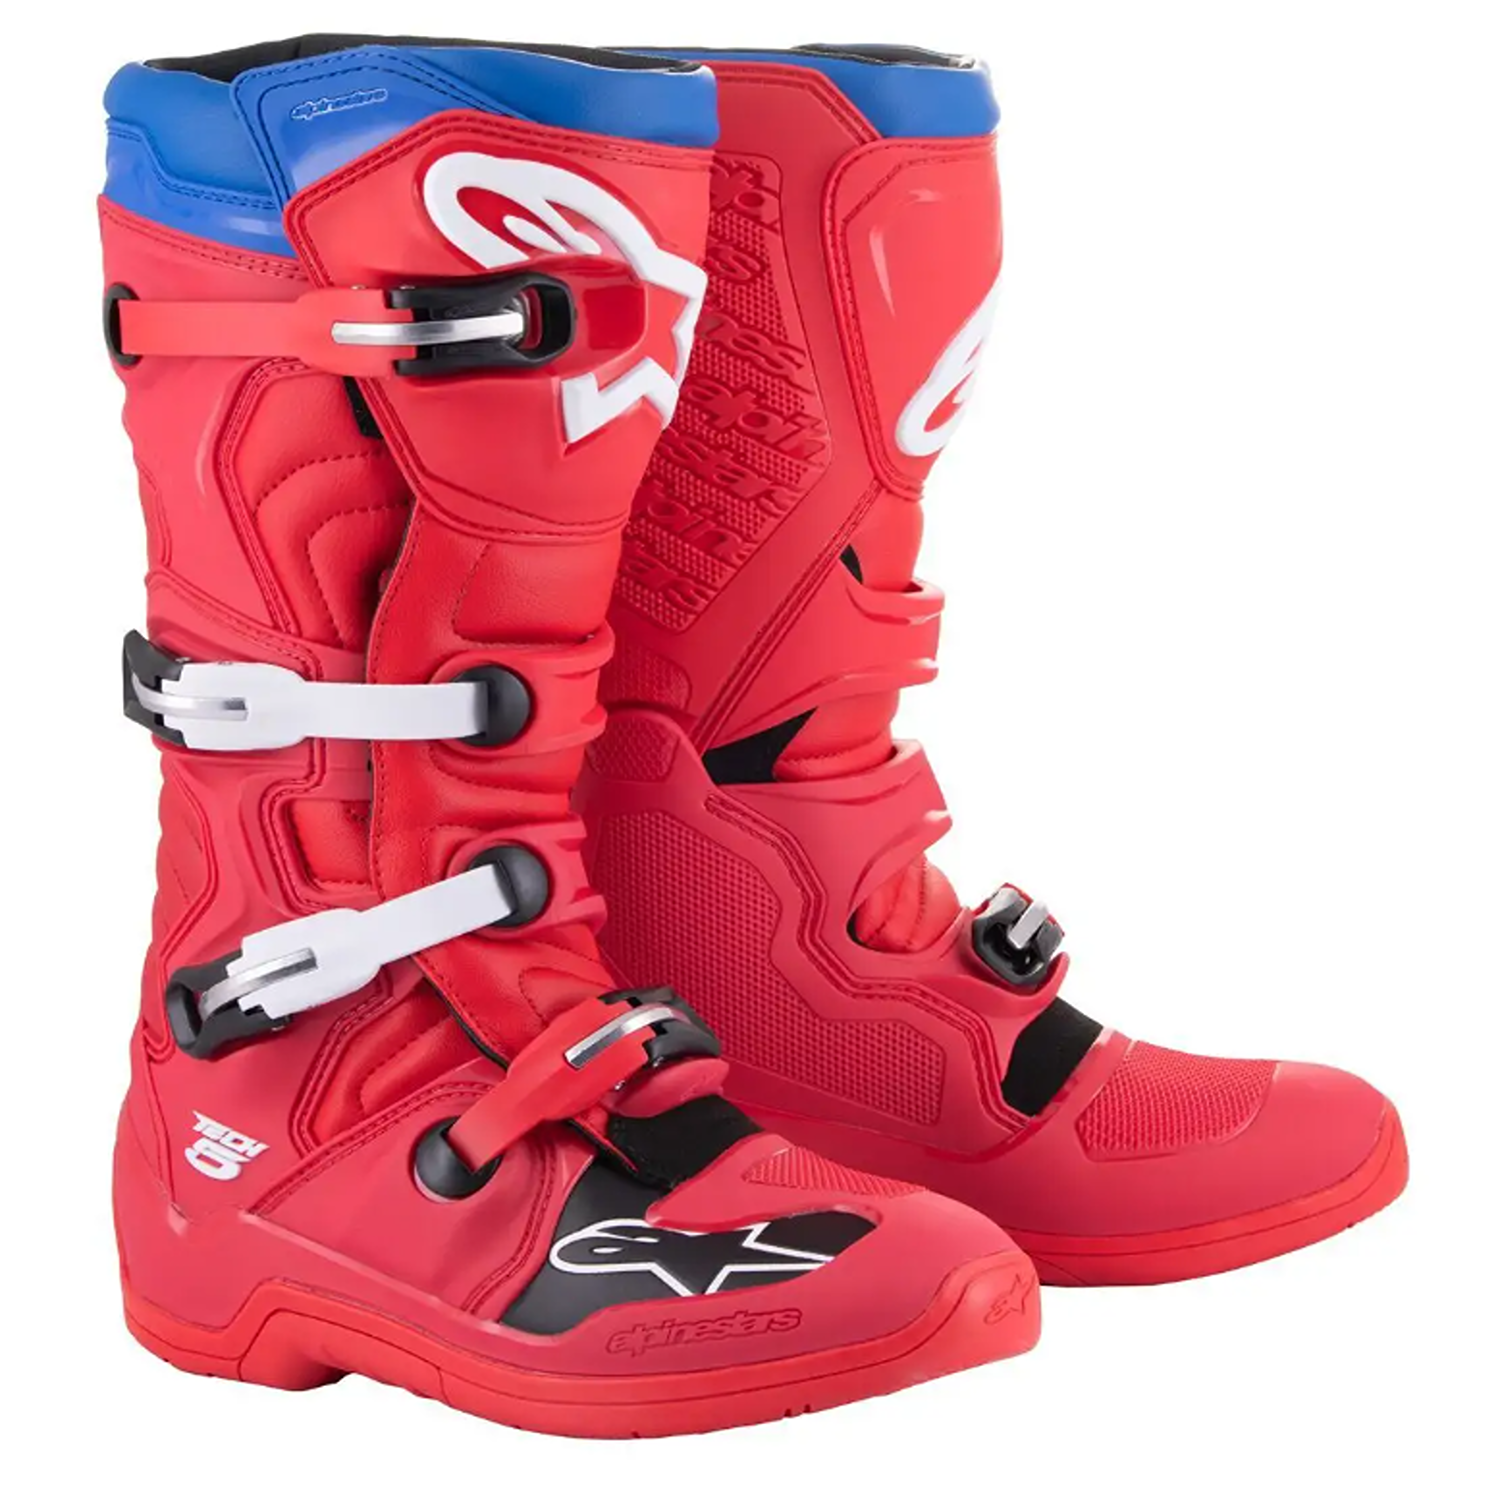 Image of Alpinestars Tech 5 Boots Bright Red Dark Red Blue Größe US 12